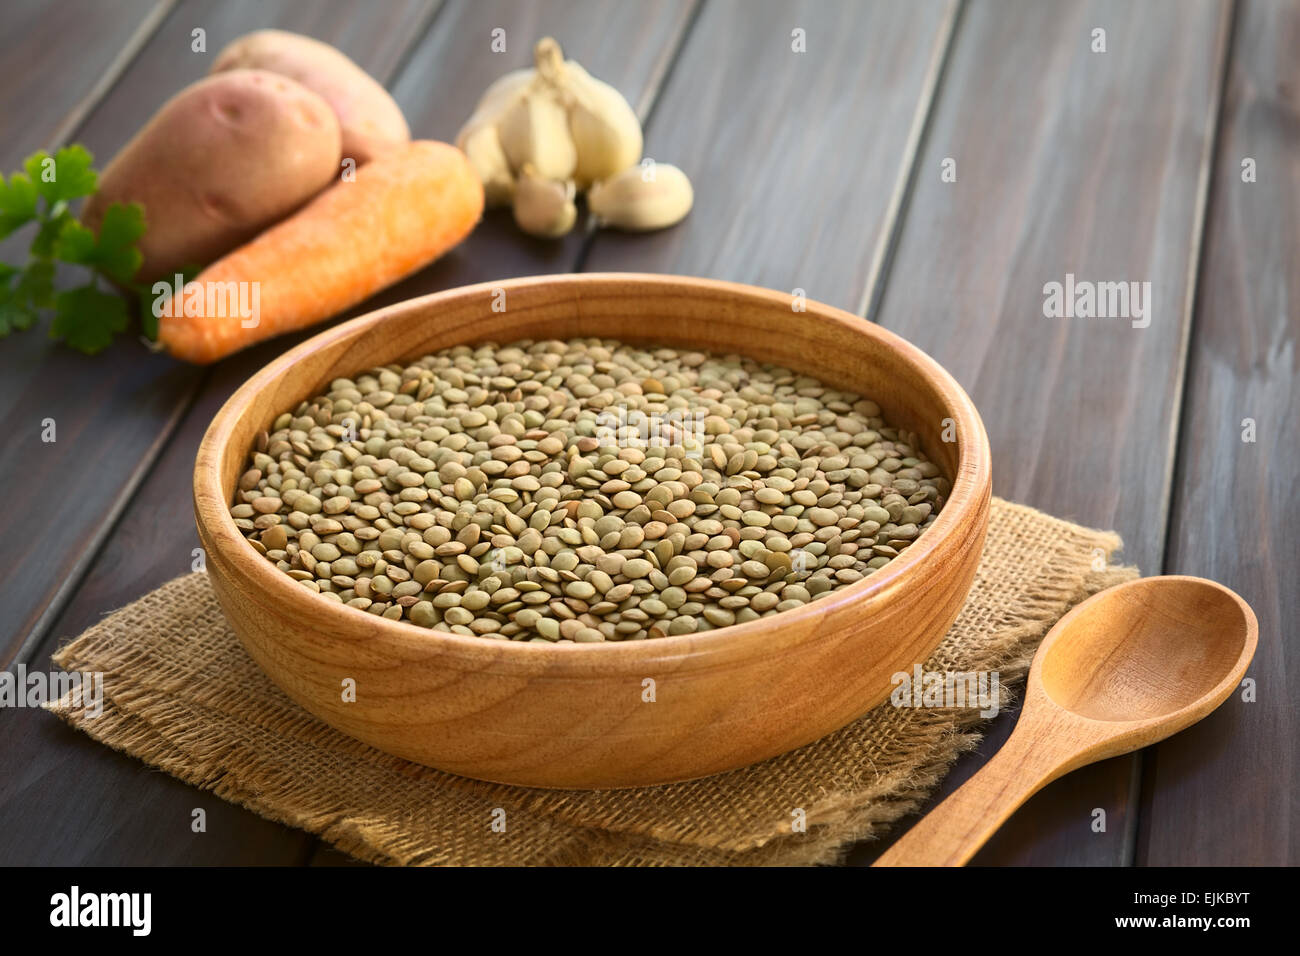 Materie lenticchie (lat. Lens culinaris) nella ciotola di legno con verdura cruda (patata, carota, aglio) nella parte posteriore Foto Stock